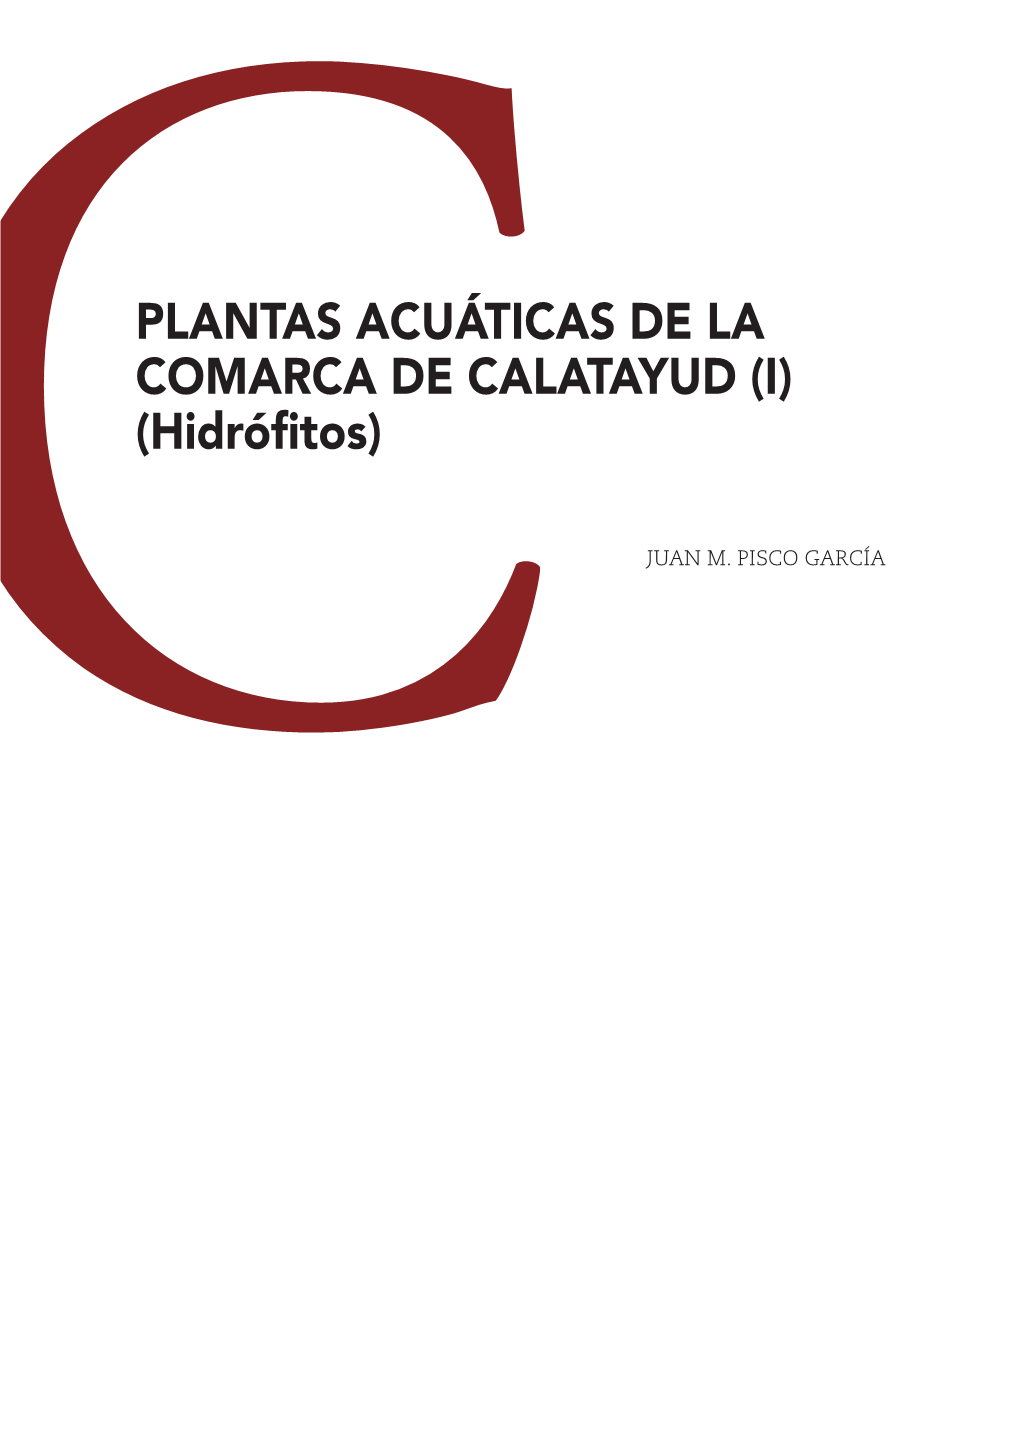 PLANTAS ACUÁTICAS DE LA COMARCA DE CALATAYUD (I) (Hidrófitos)